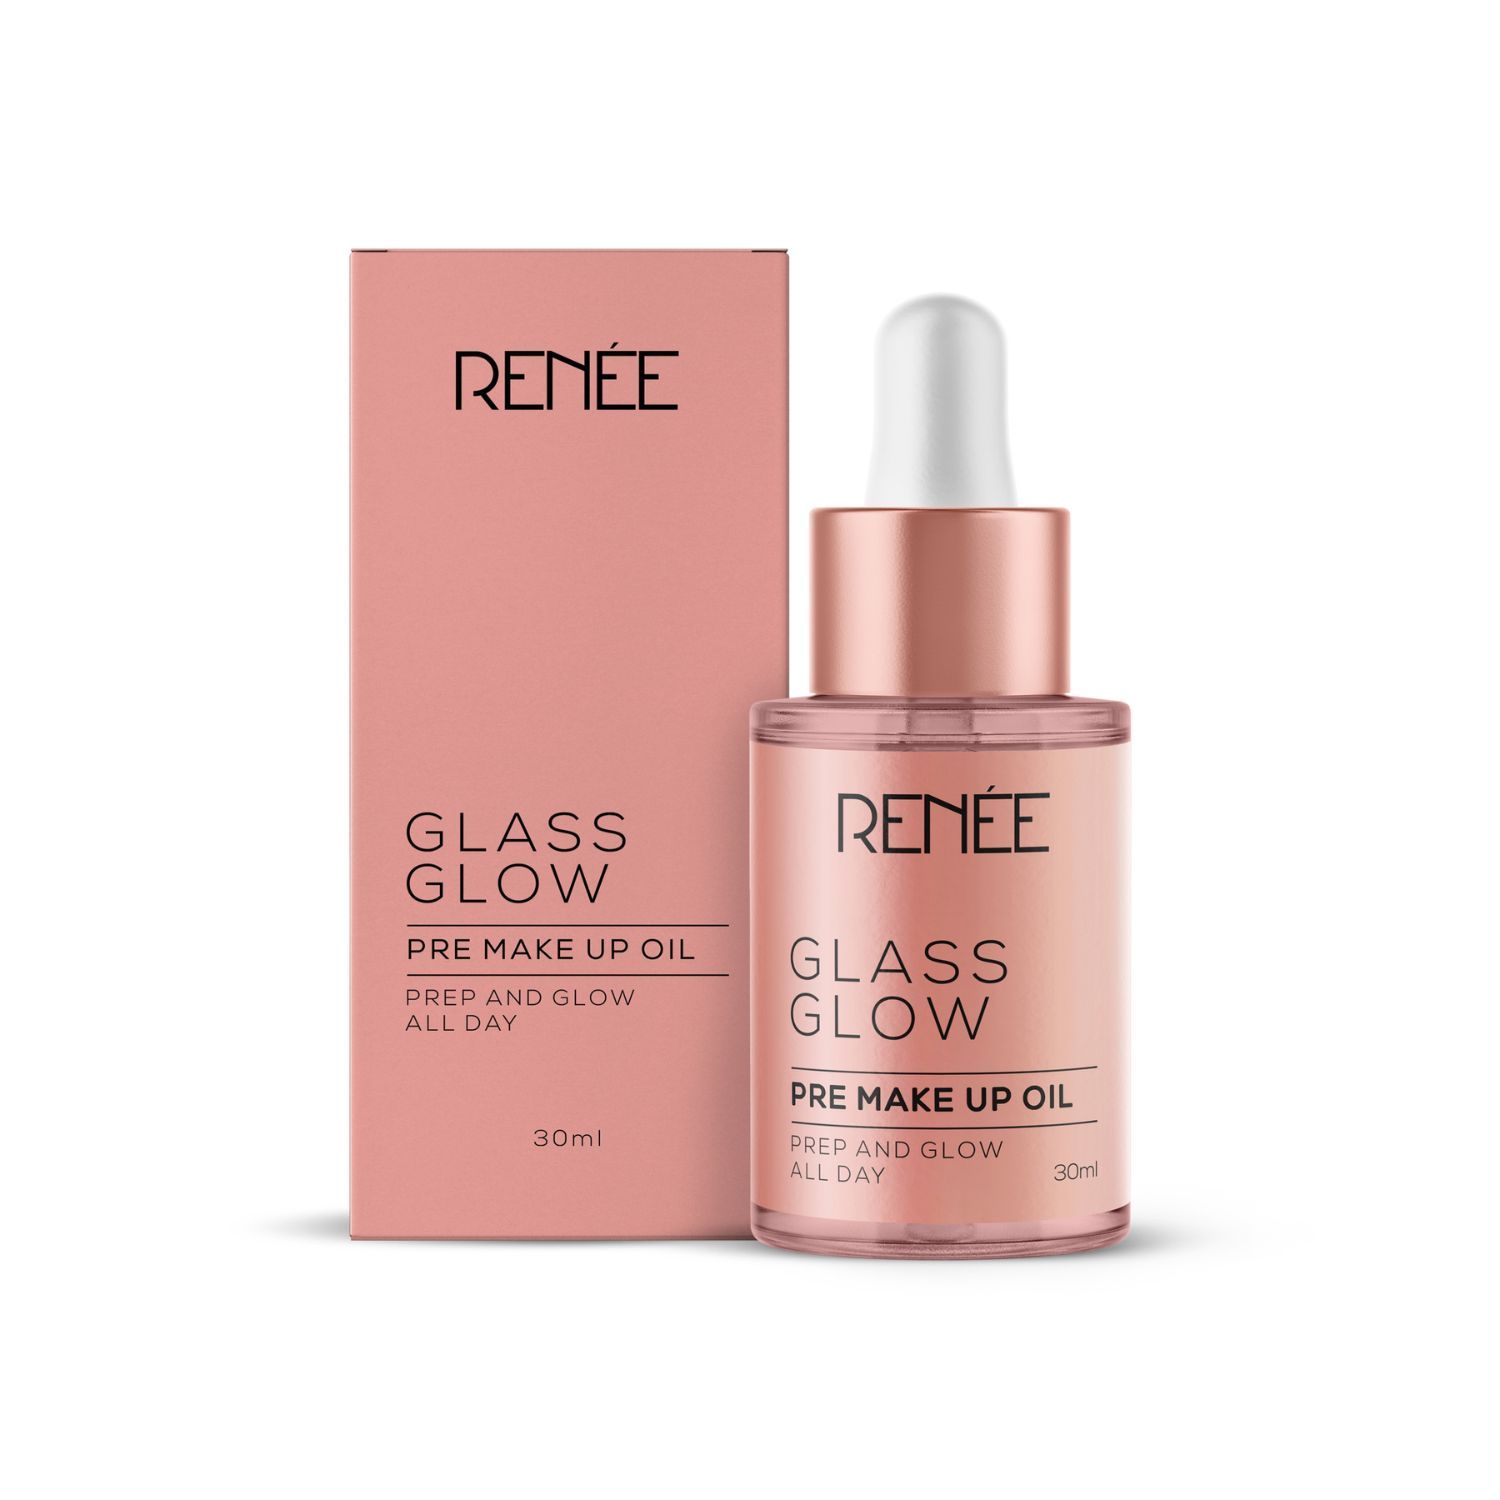 Buy RENEE Glass Glow Pre Make Up Oil, 30 ml - Purplle